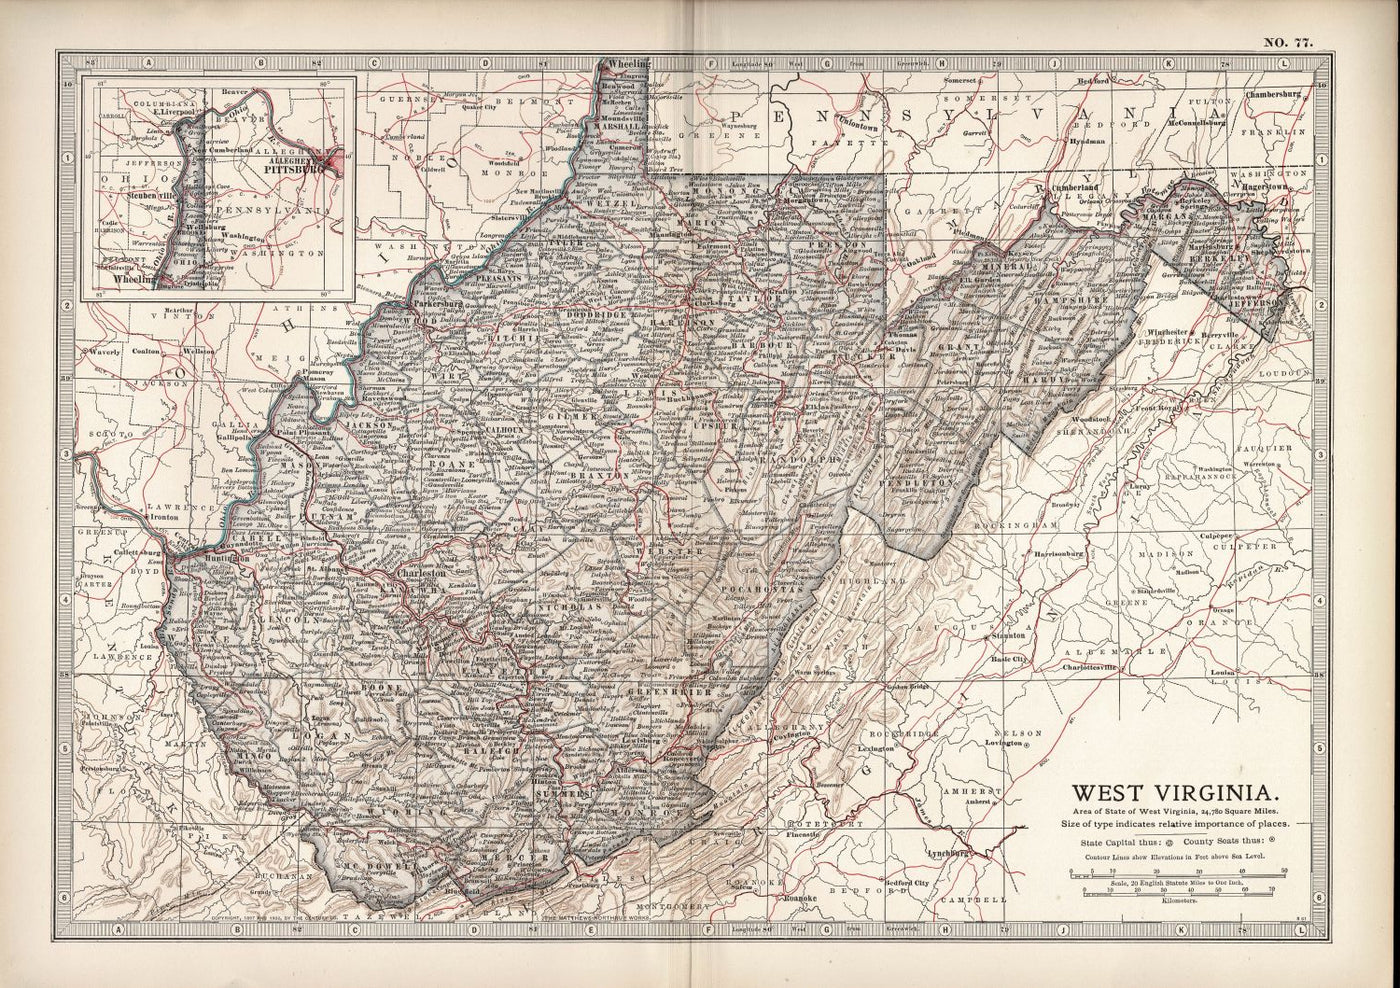 West Virginia map No.77, Encyclopaedia Britannica 1903